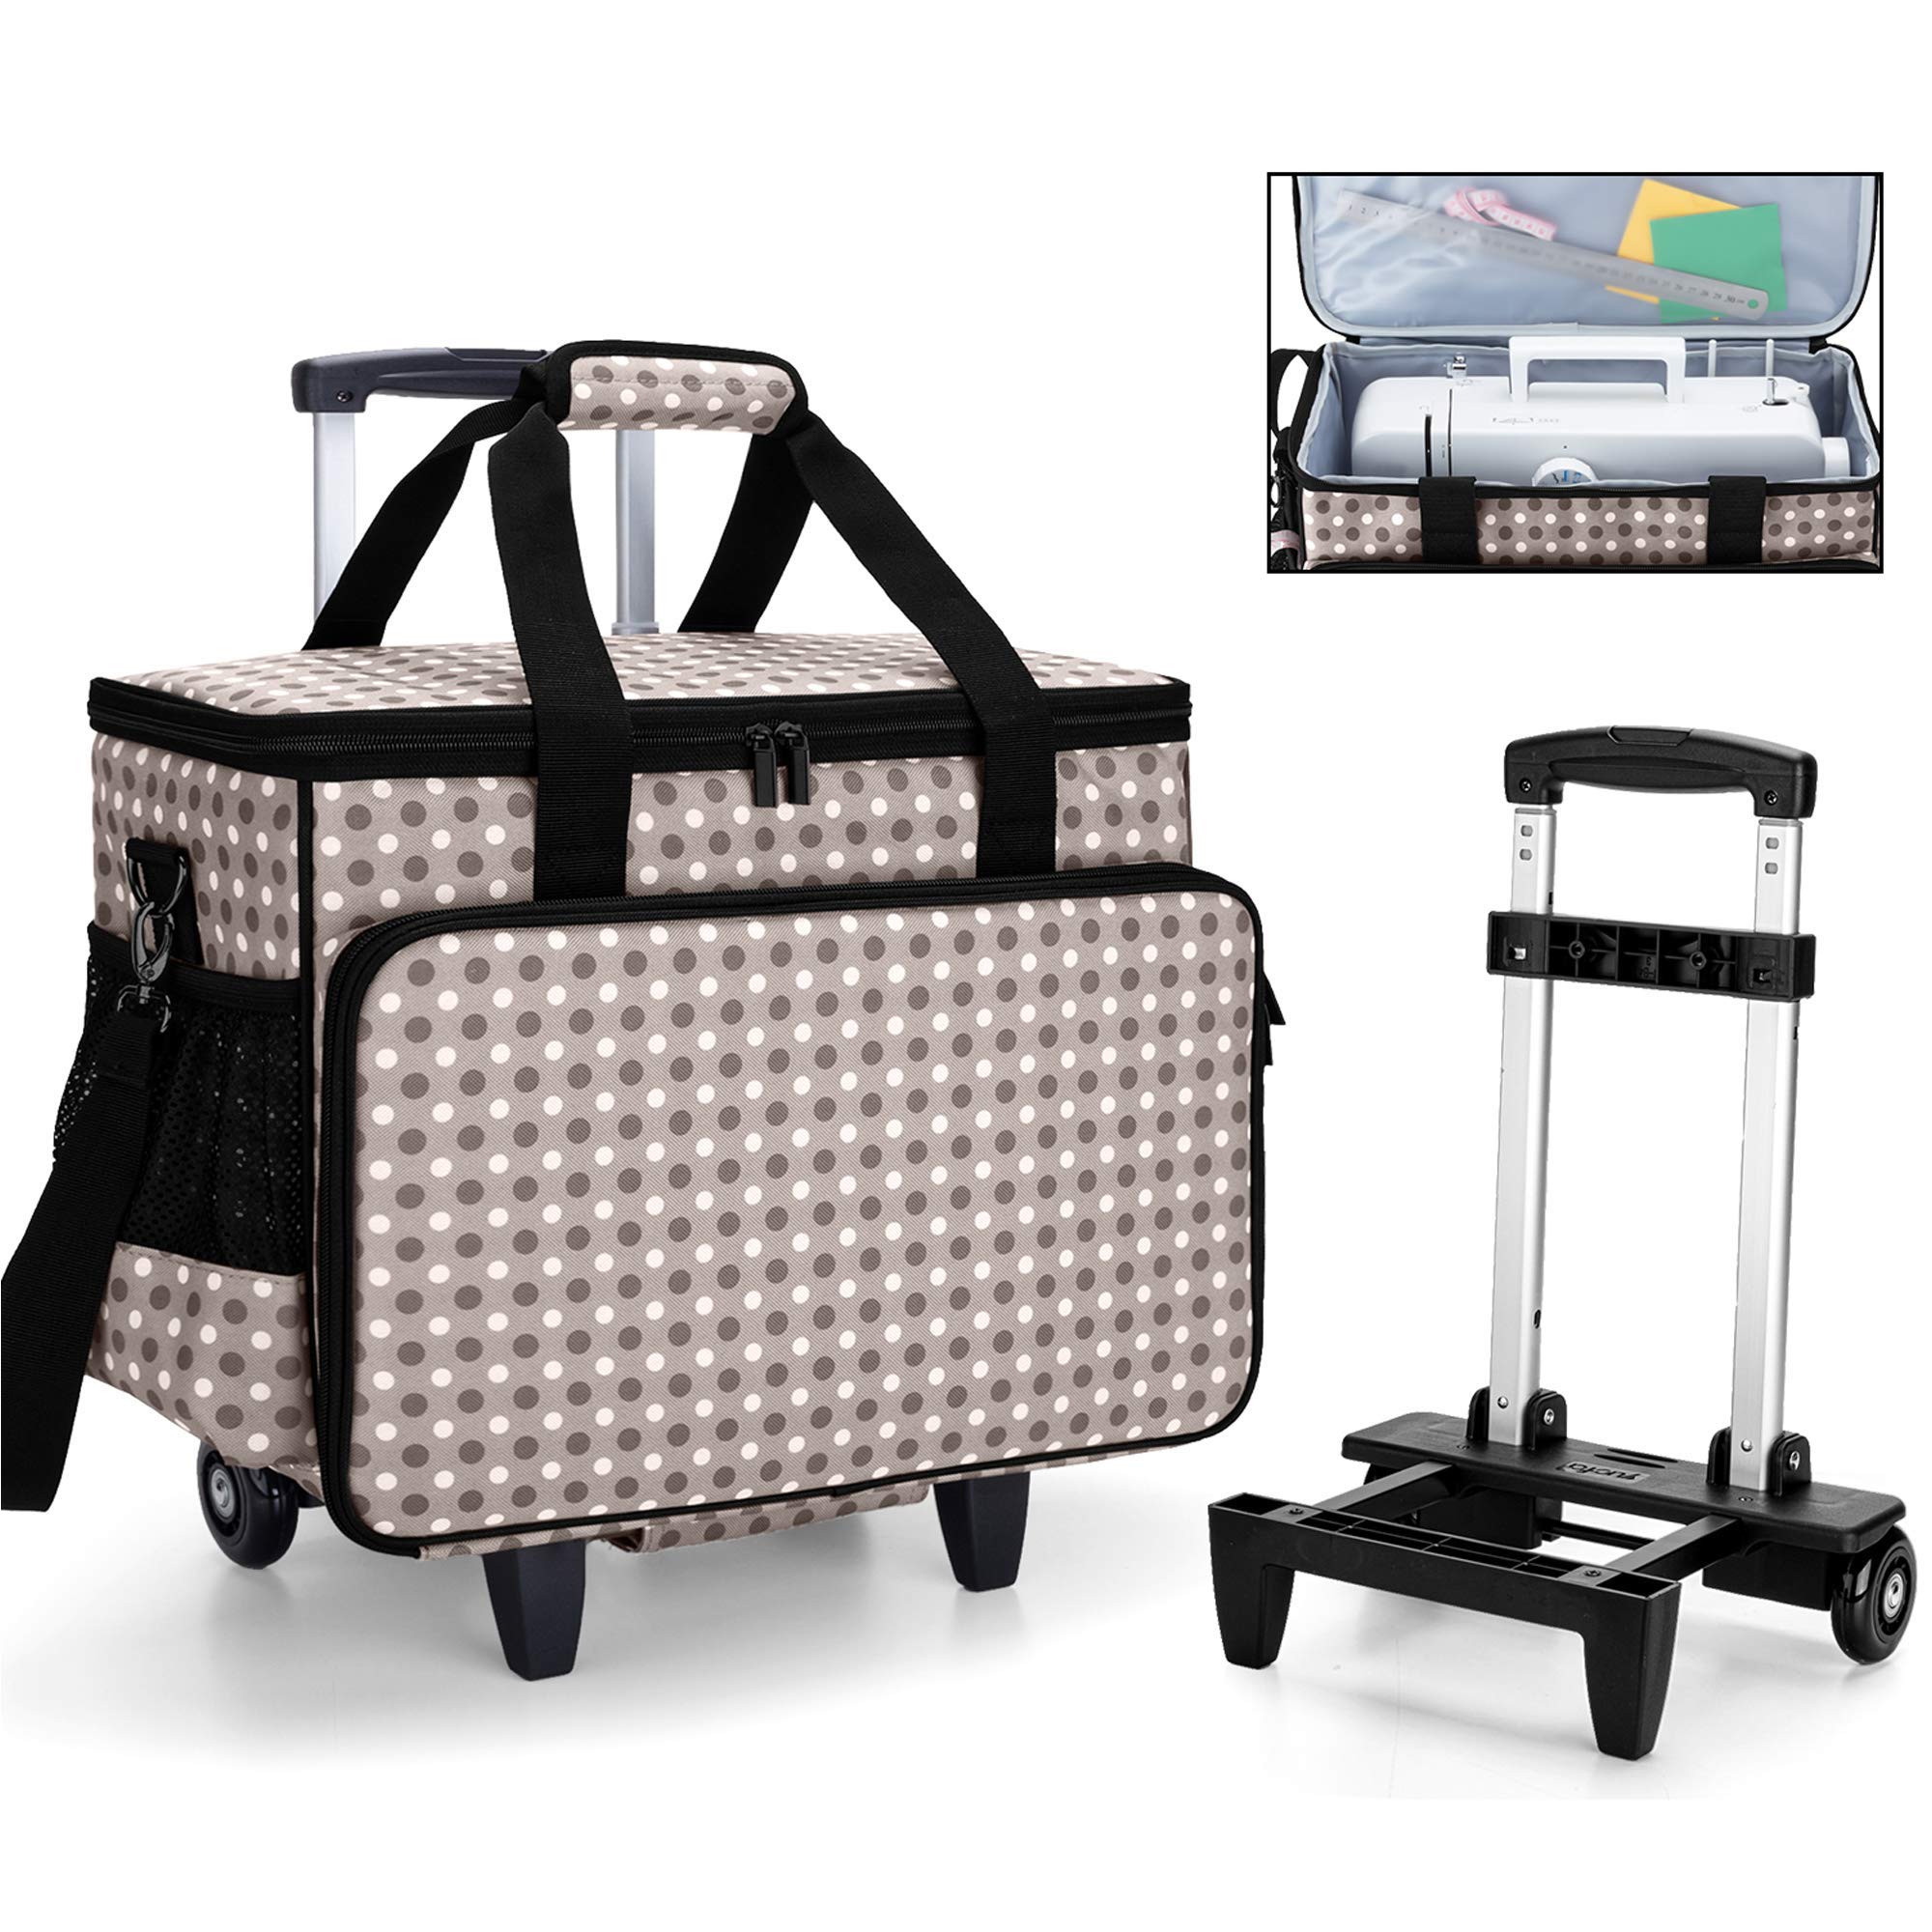 ¿Existen opciones de maletas con ruedas para facilitar el transporte de la máquina de coser Refrey 427?